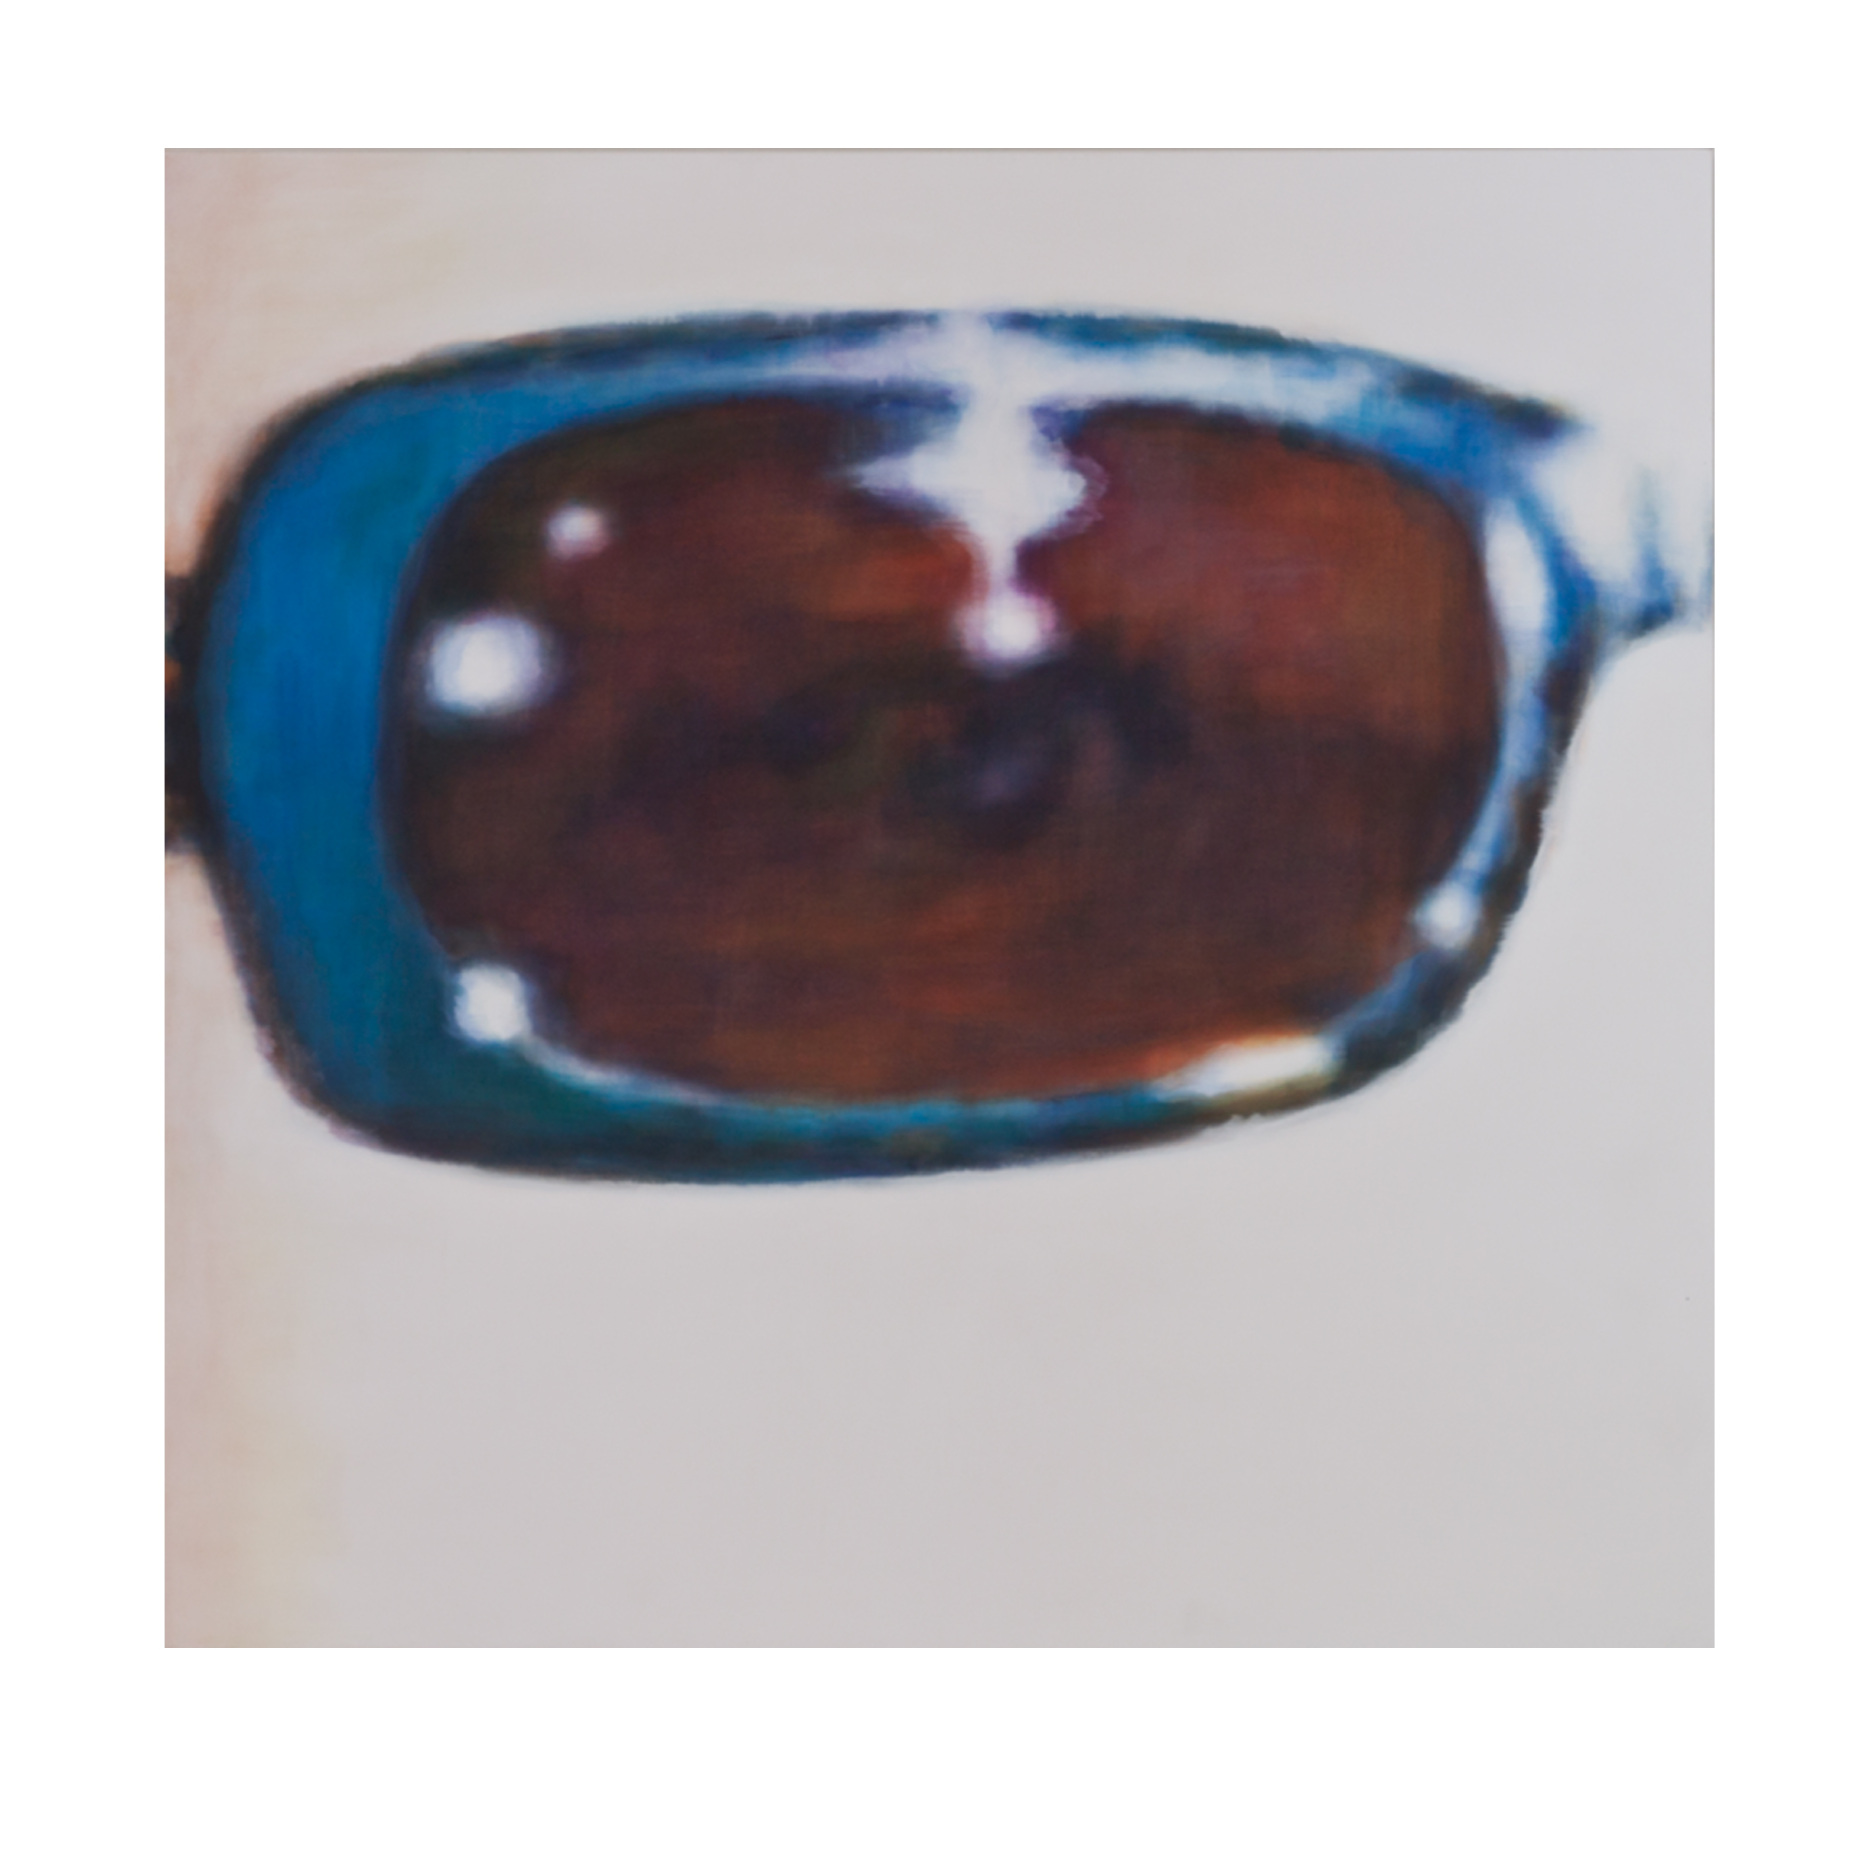  Halbe Brille, 2011 155 x 150 cm Acryl auf Baumwolle 